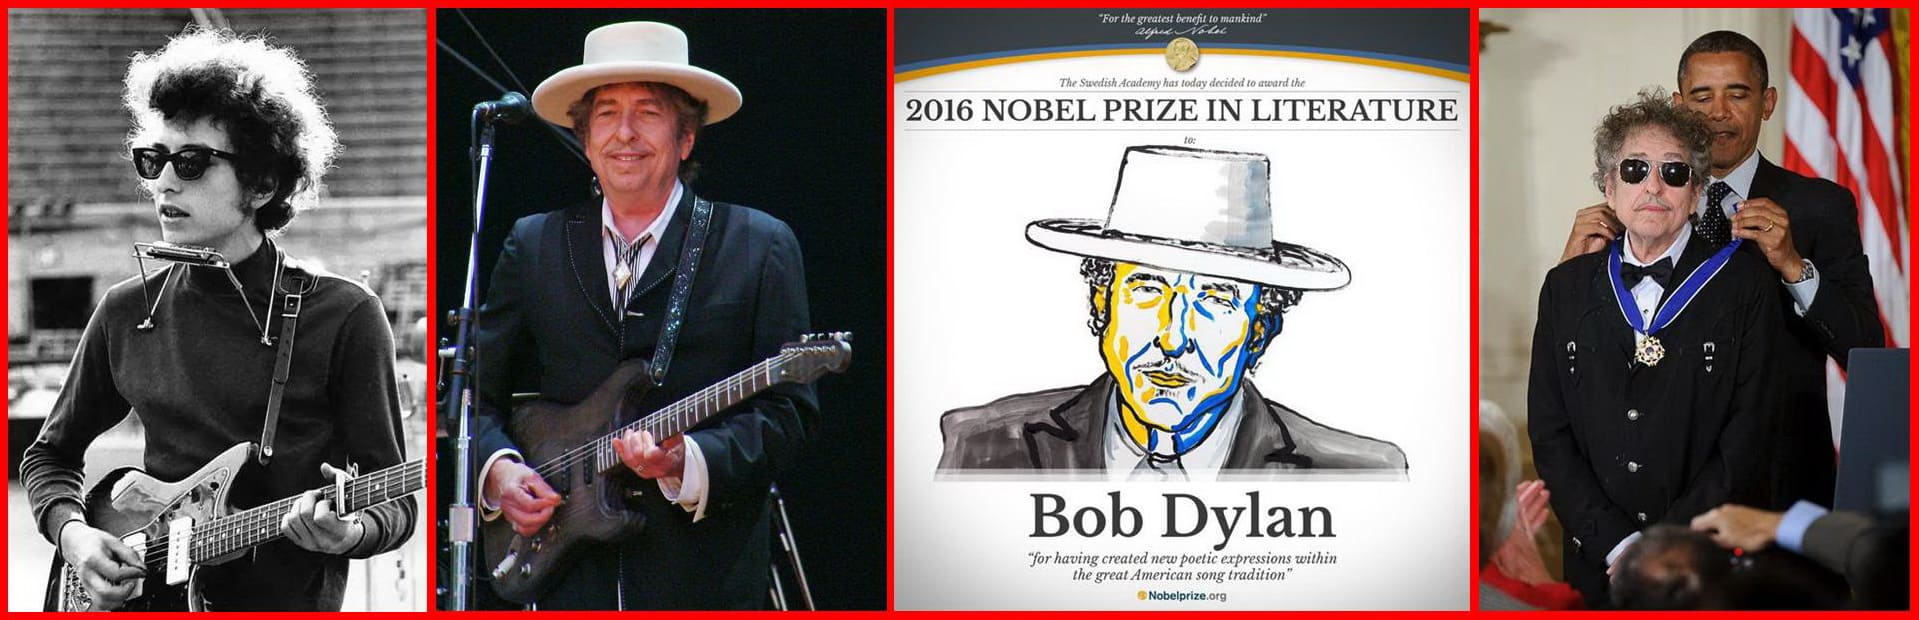 Боб Дилан - Нобелевский лауреат